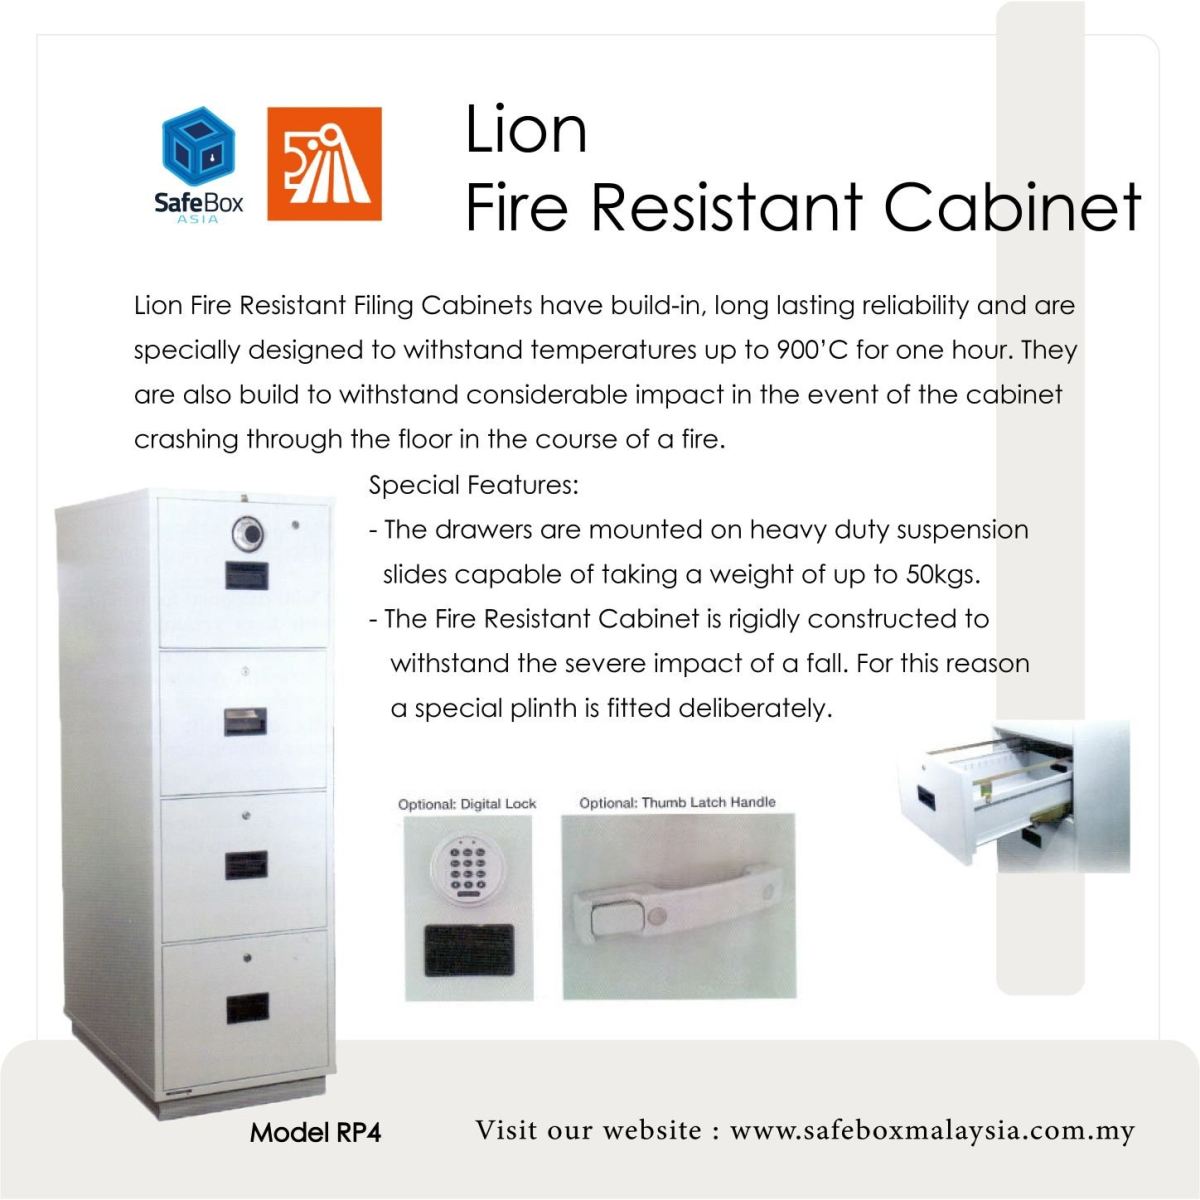 LION FIRE RESISTANT CABINET